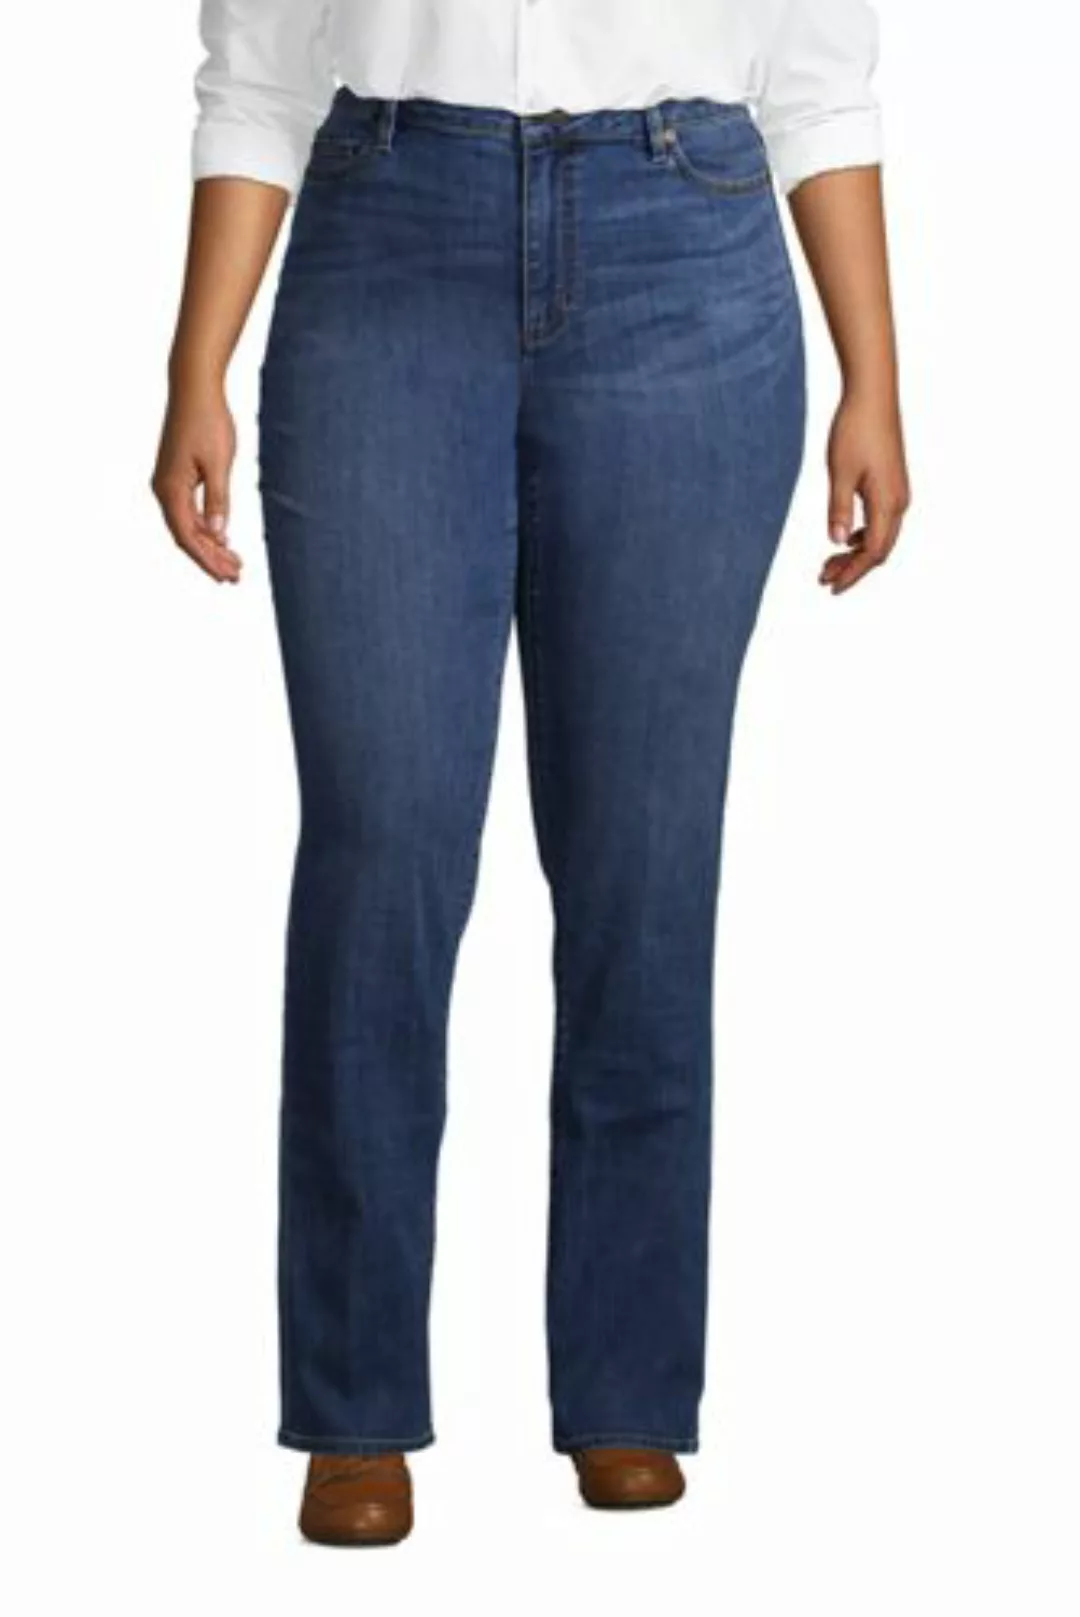 Straight Fit Öko Jeans Mid Waist in großen Größen, Damen, Größe: 50 32 Plus günstig online kaufen